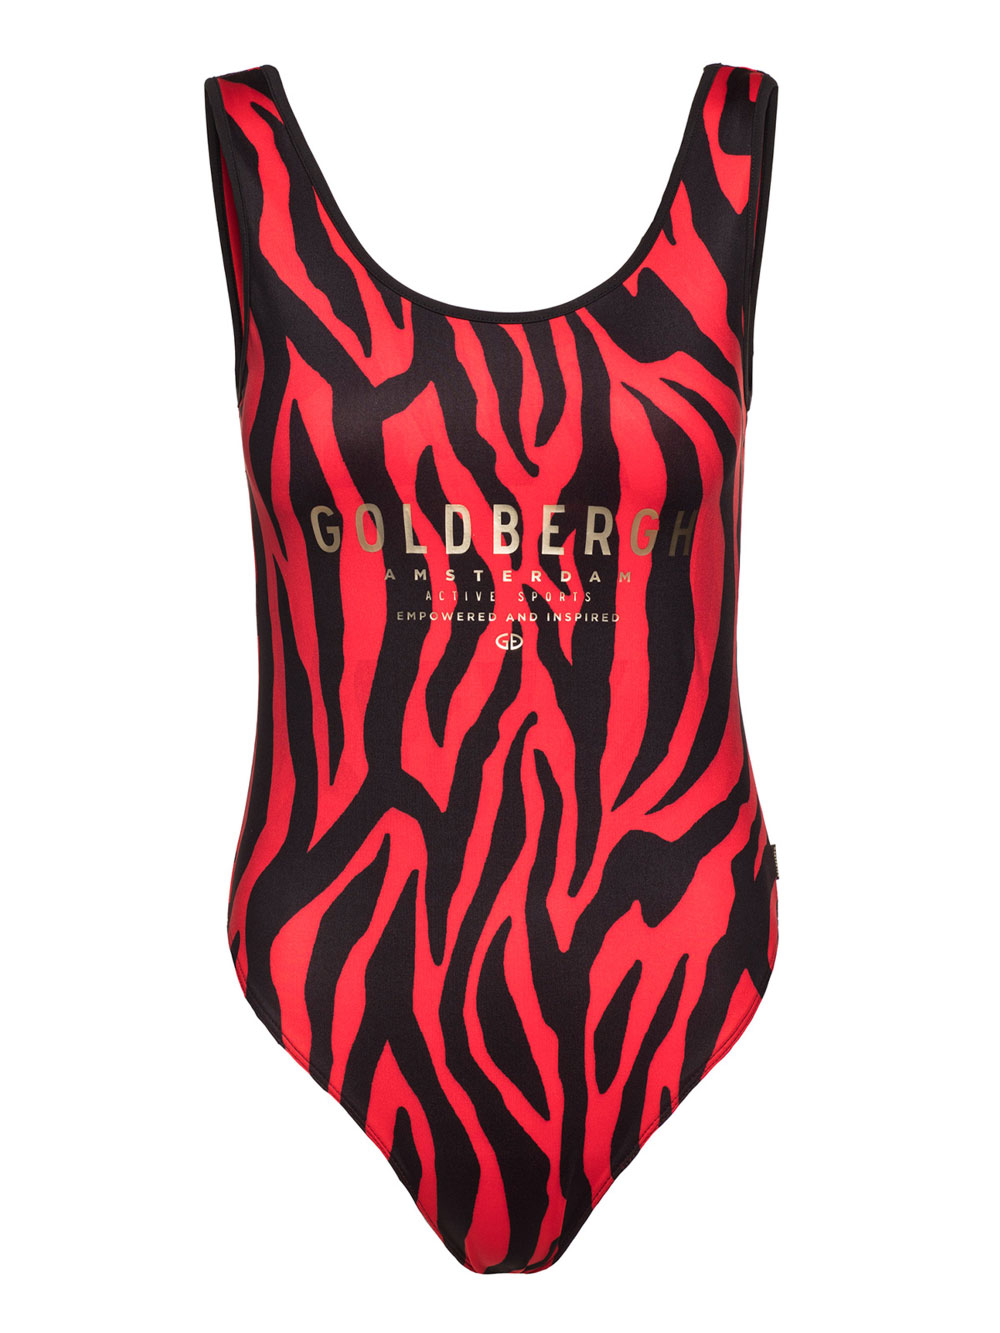 Jednodílné plavky Tabana z kolekce Goldbergh Tiger Red